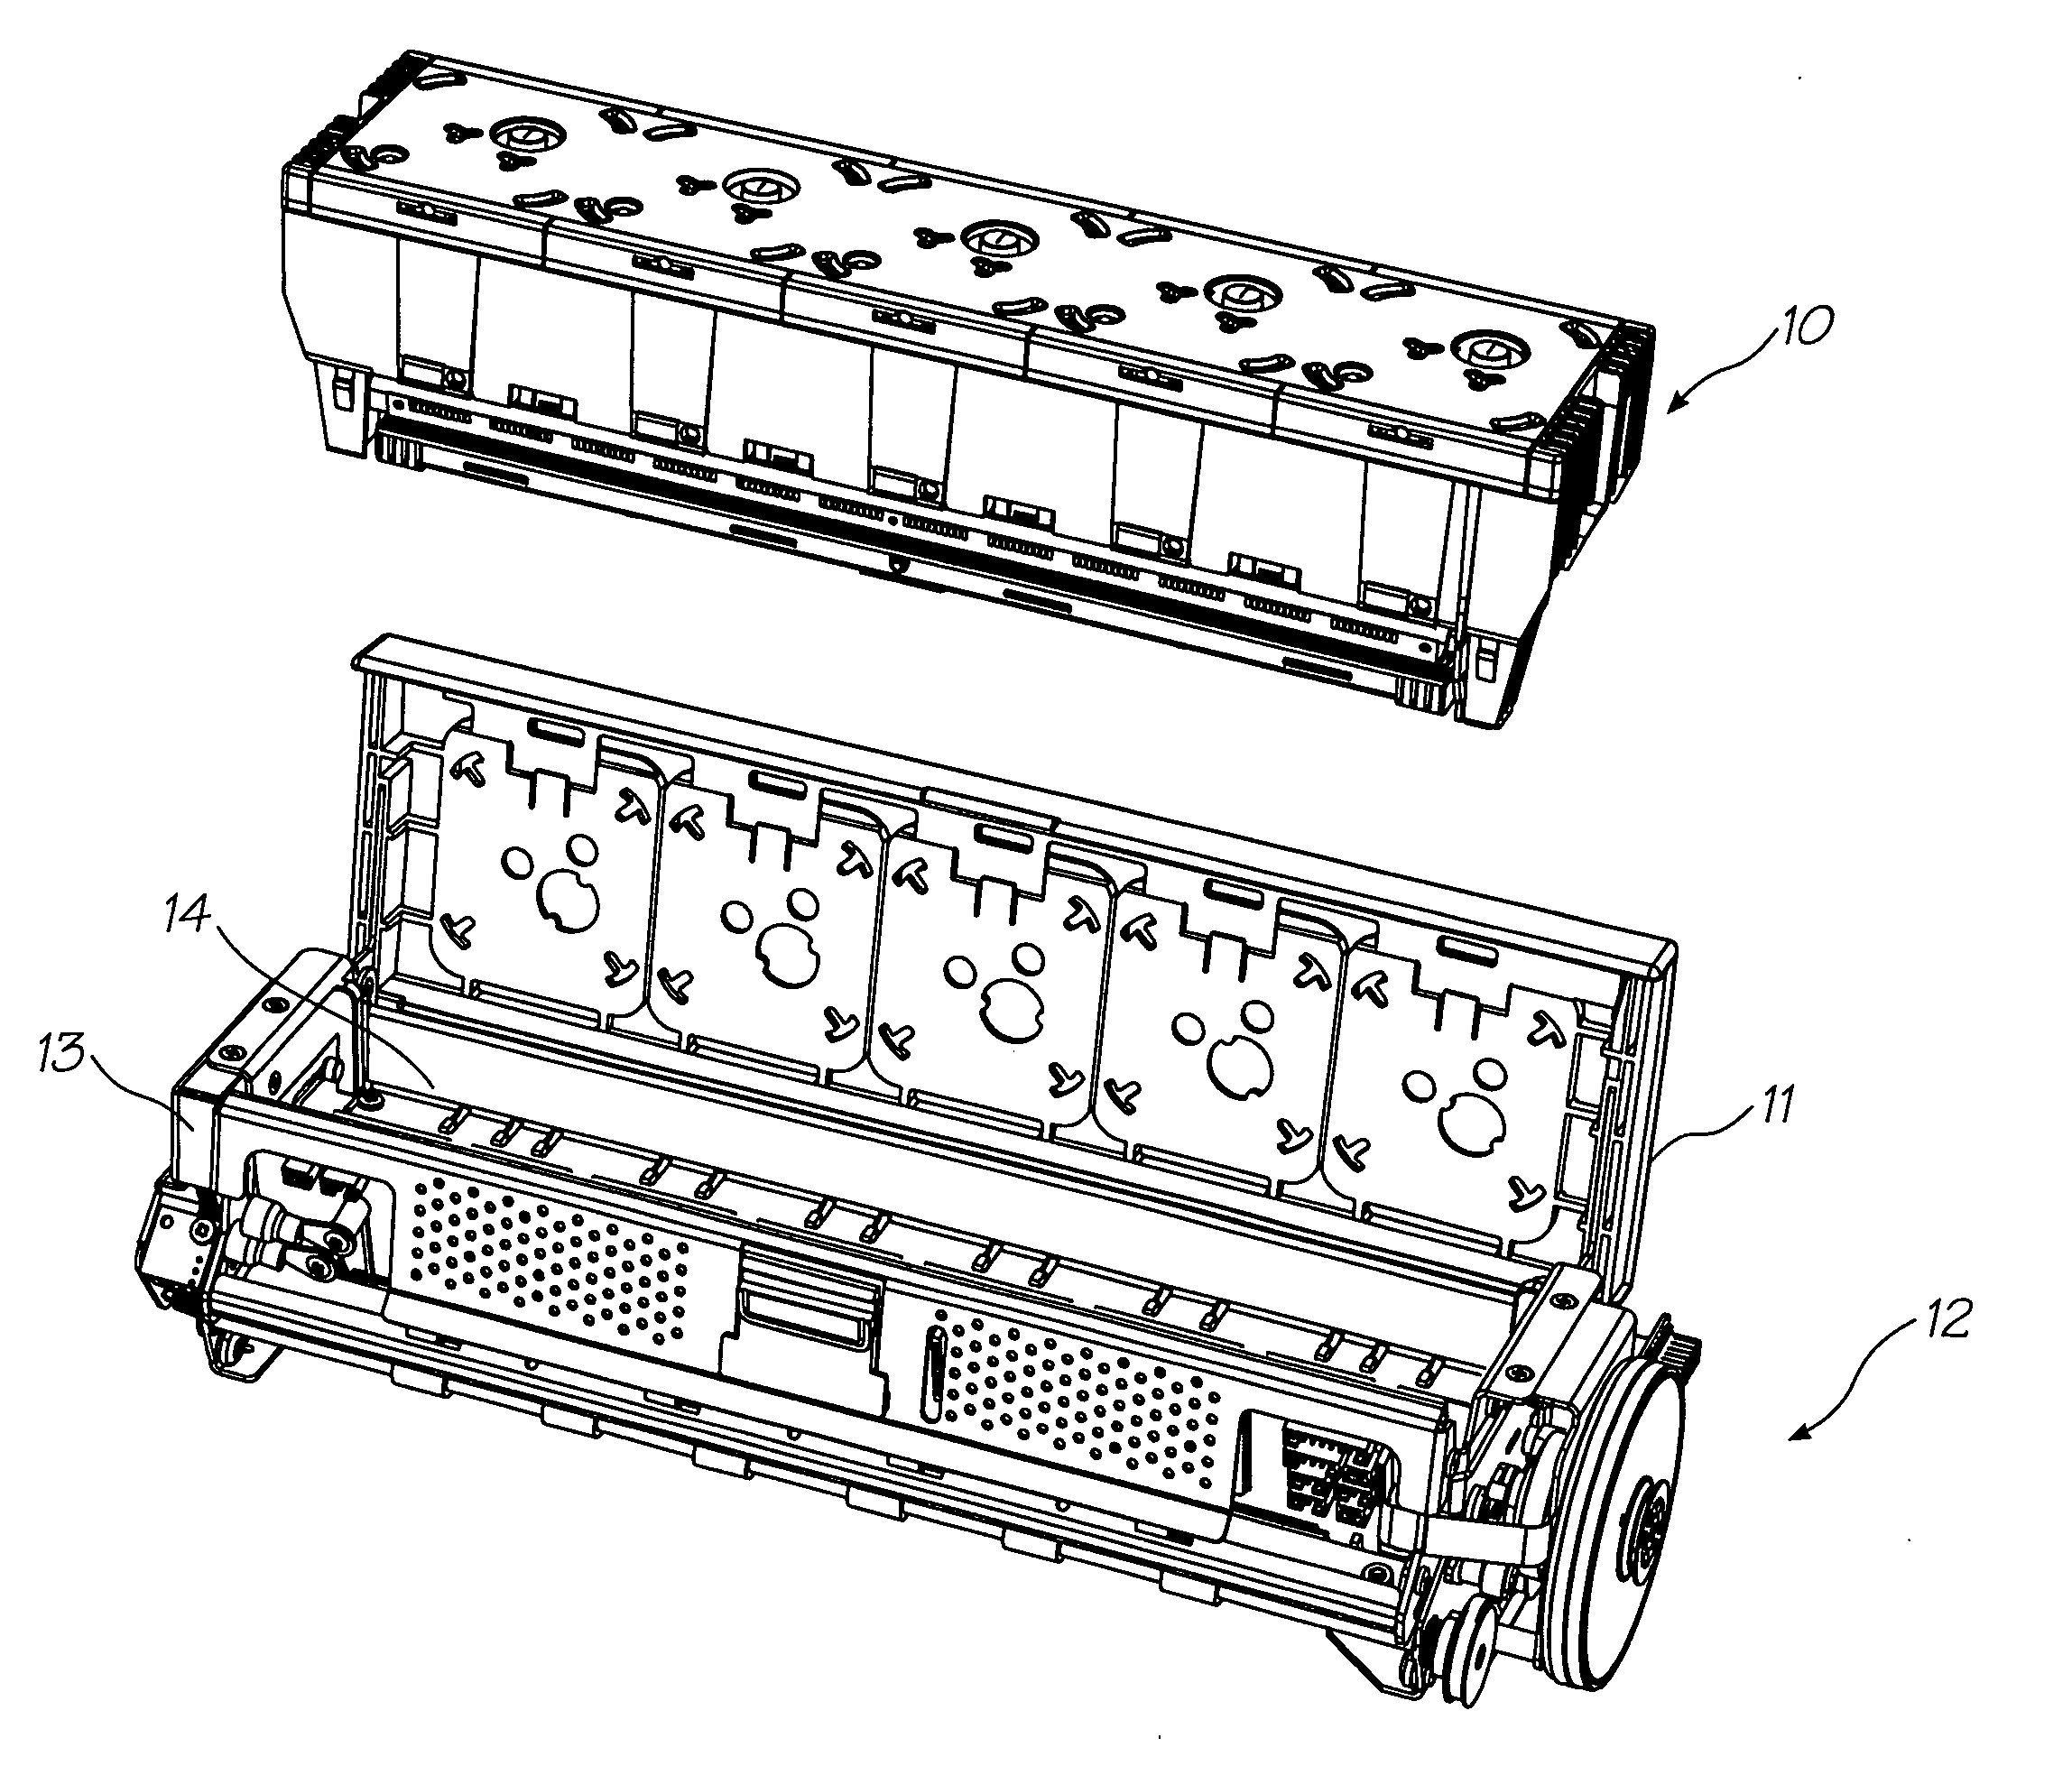 Ink cartridge with variable ink storage volume